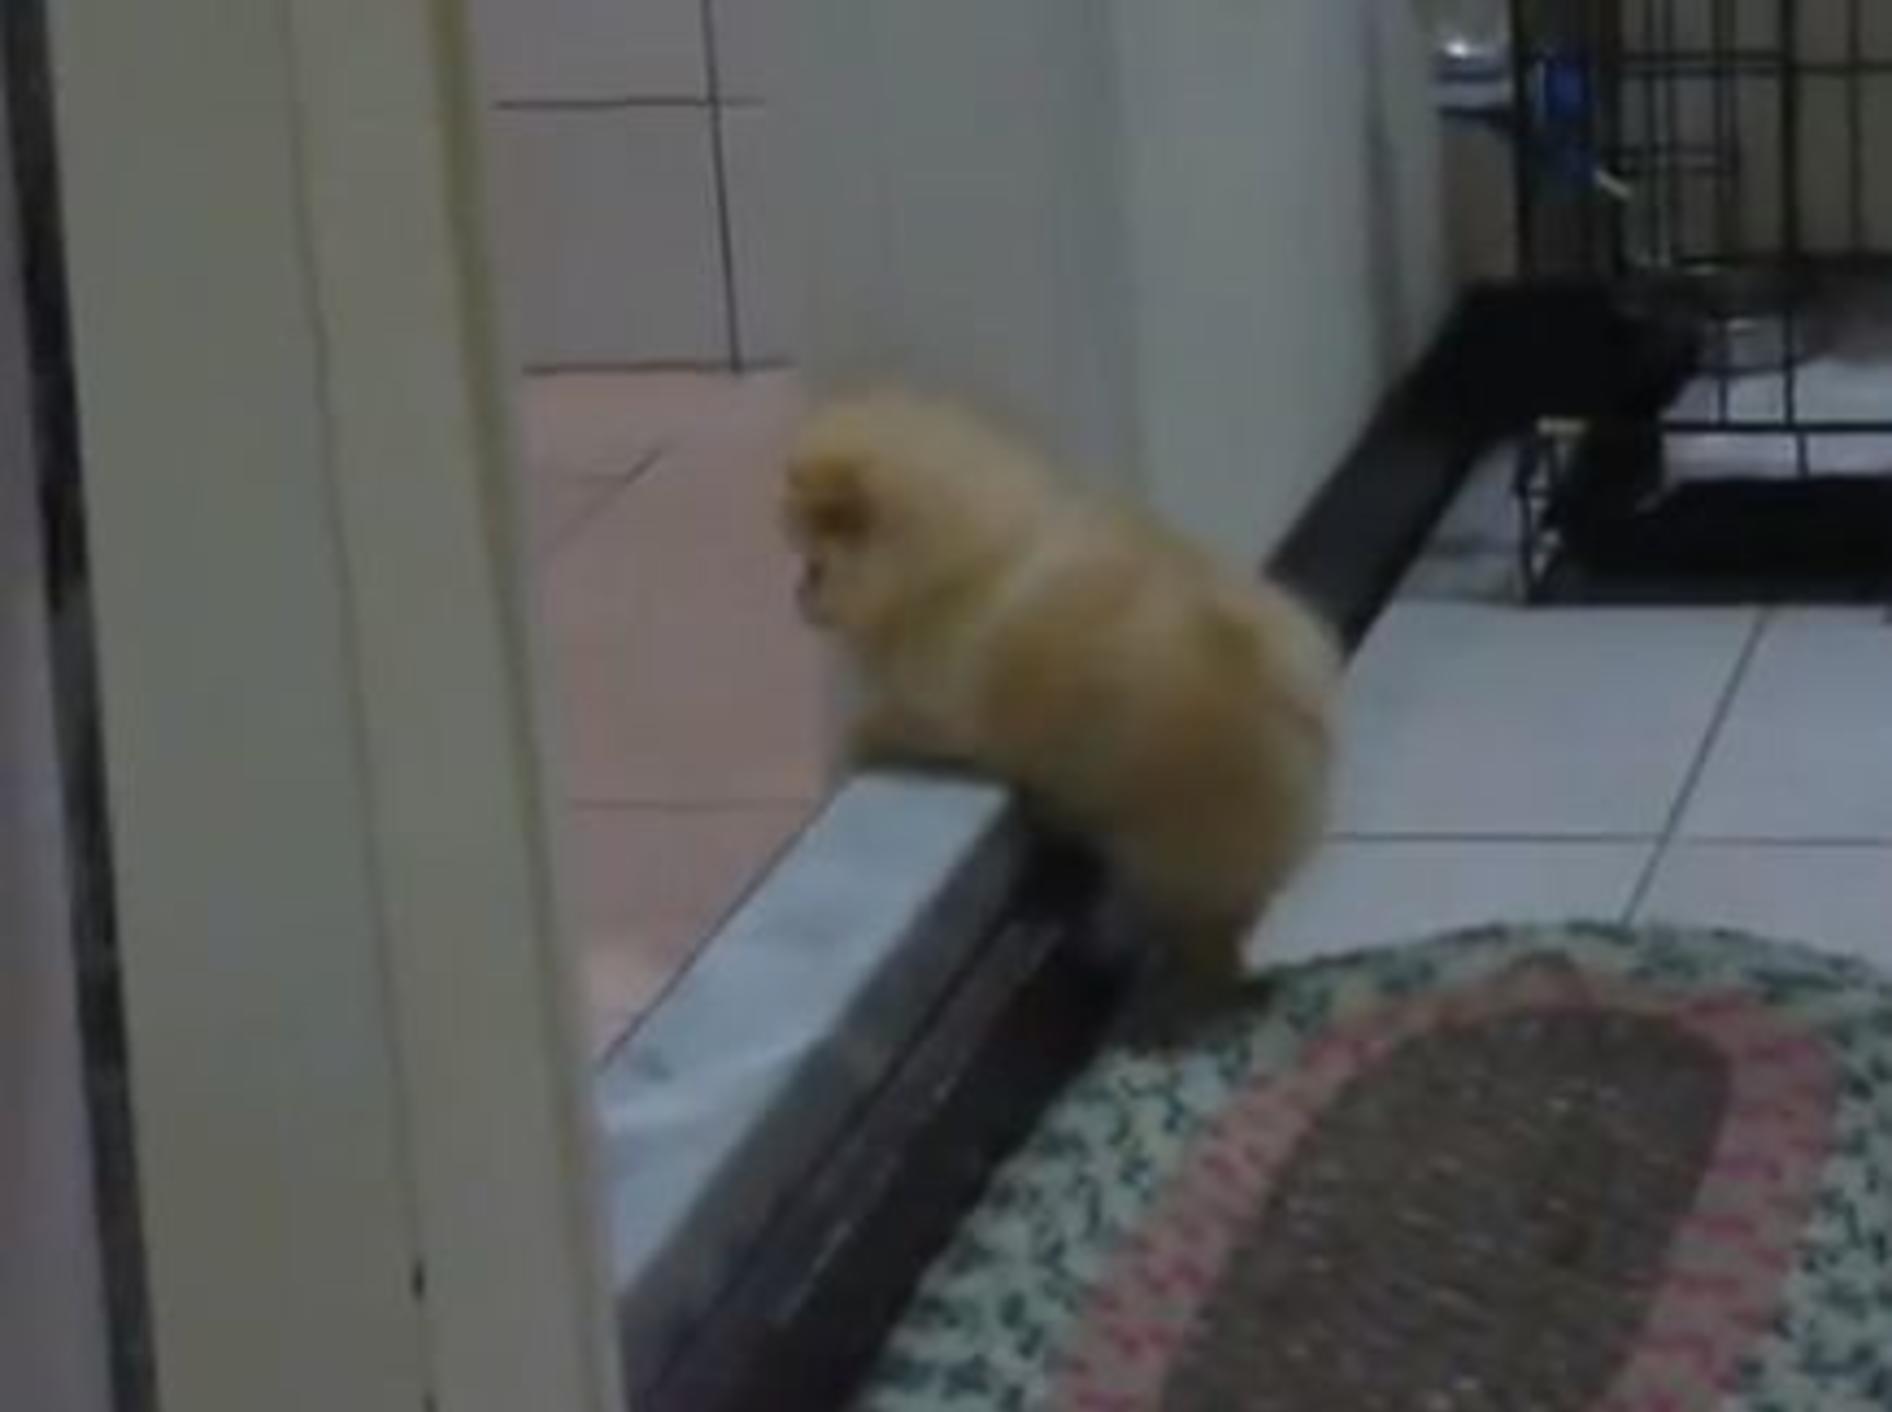 Flauschiger kleiner Spitz übt Treppensteigen — Bild: Youtube / baby5313